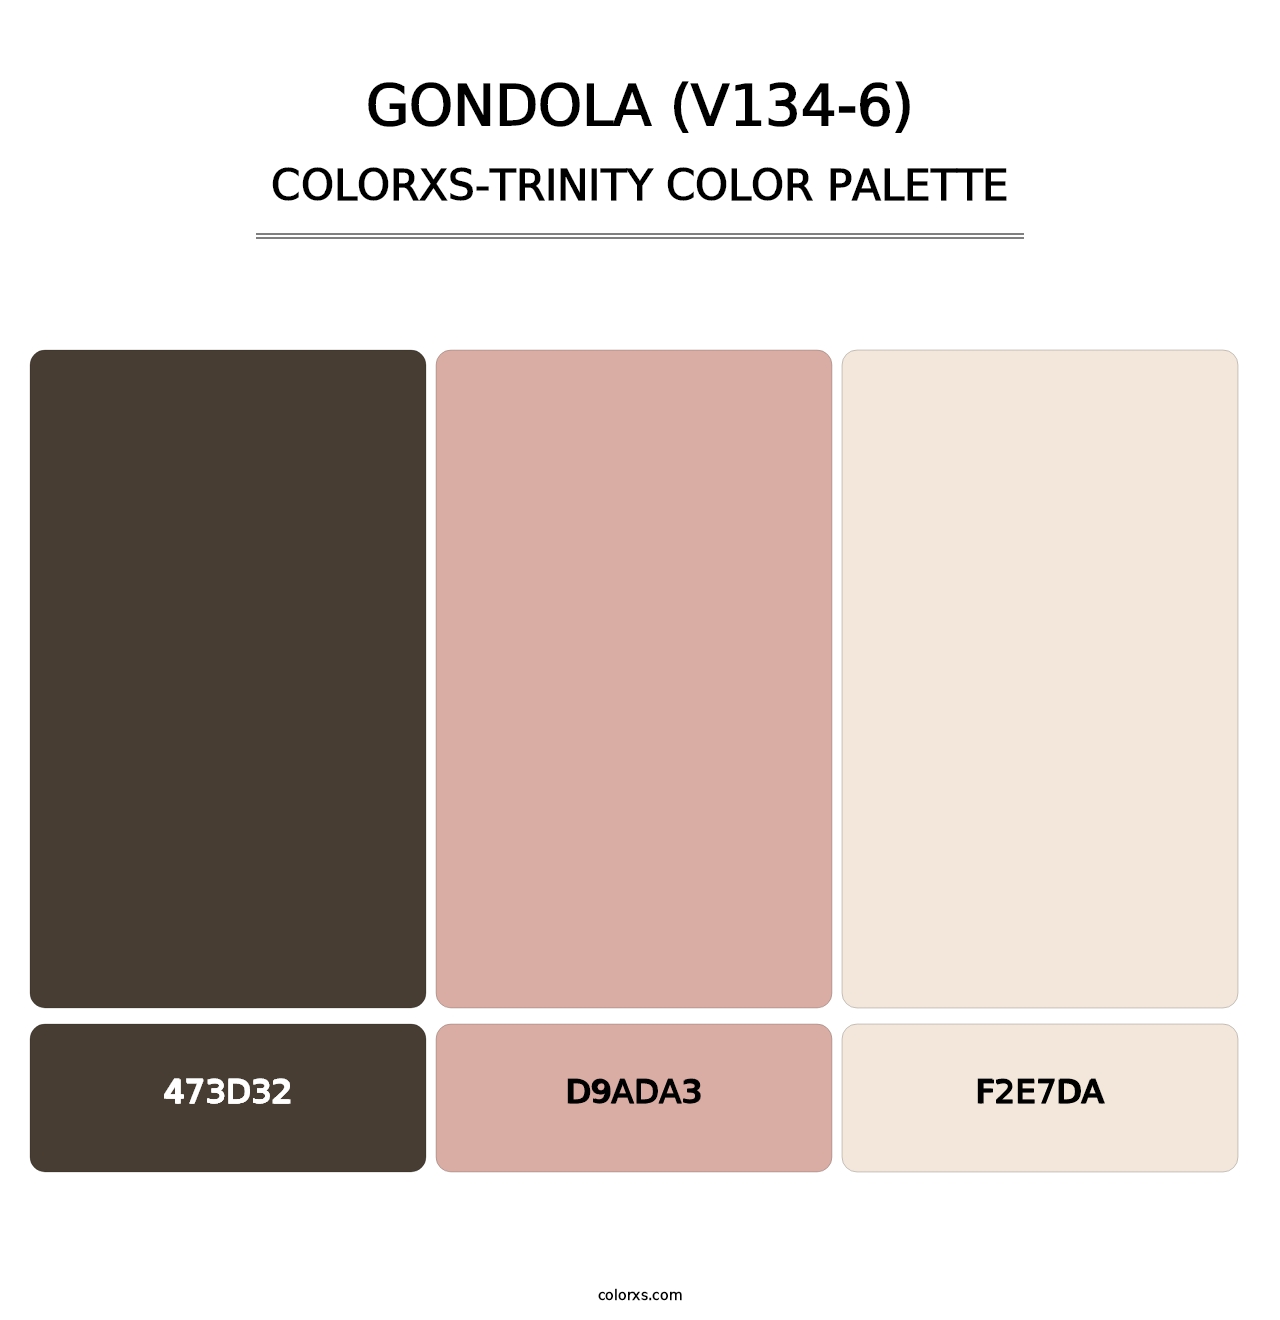 Gondola (V134-6) - Colorxs Trinity Palette